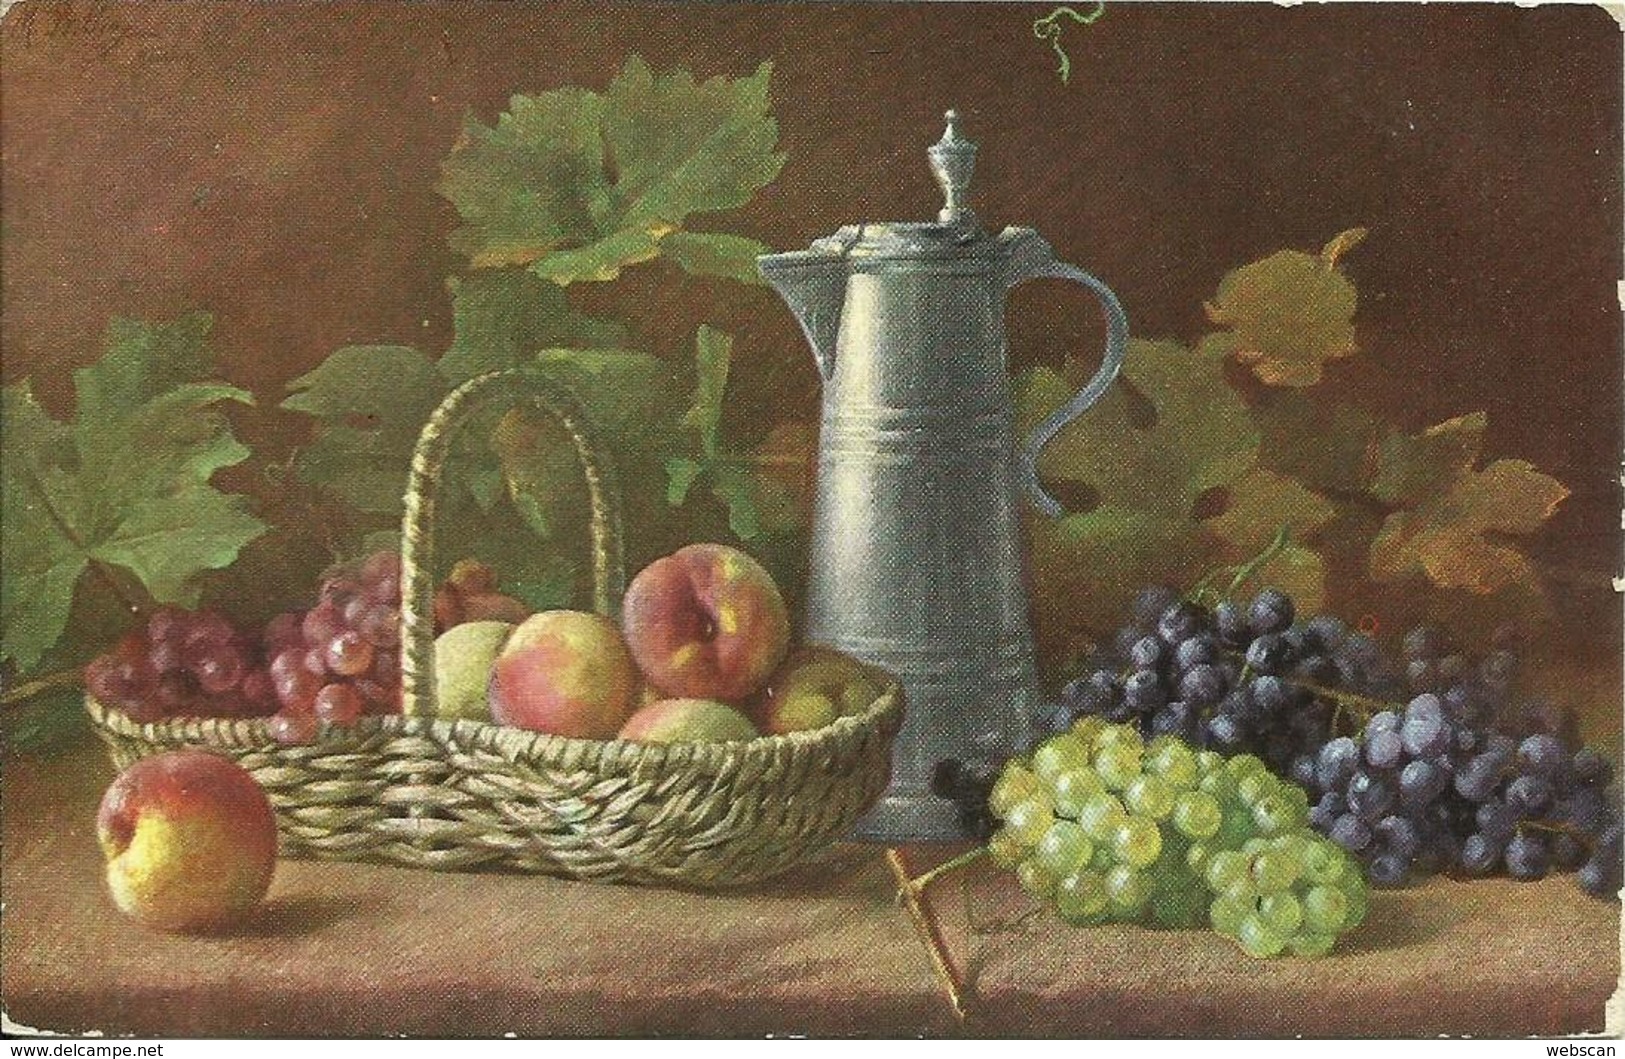 AK Gemälde M. Billing Stillleben Obst Äpfel Trauben Color 1912 #02 - Billing, M.